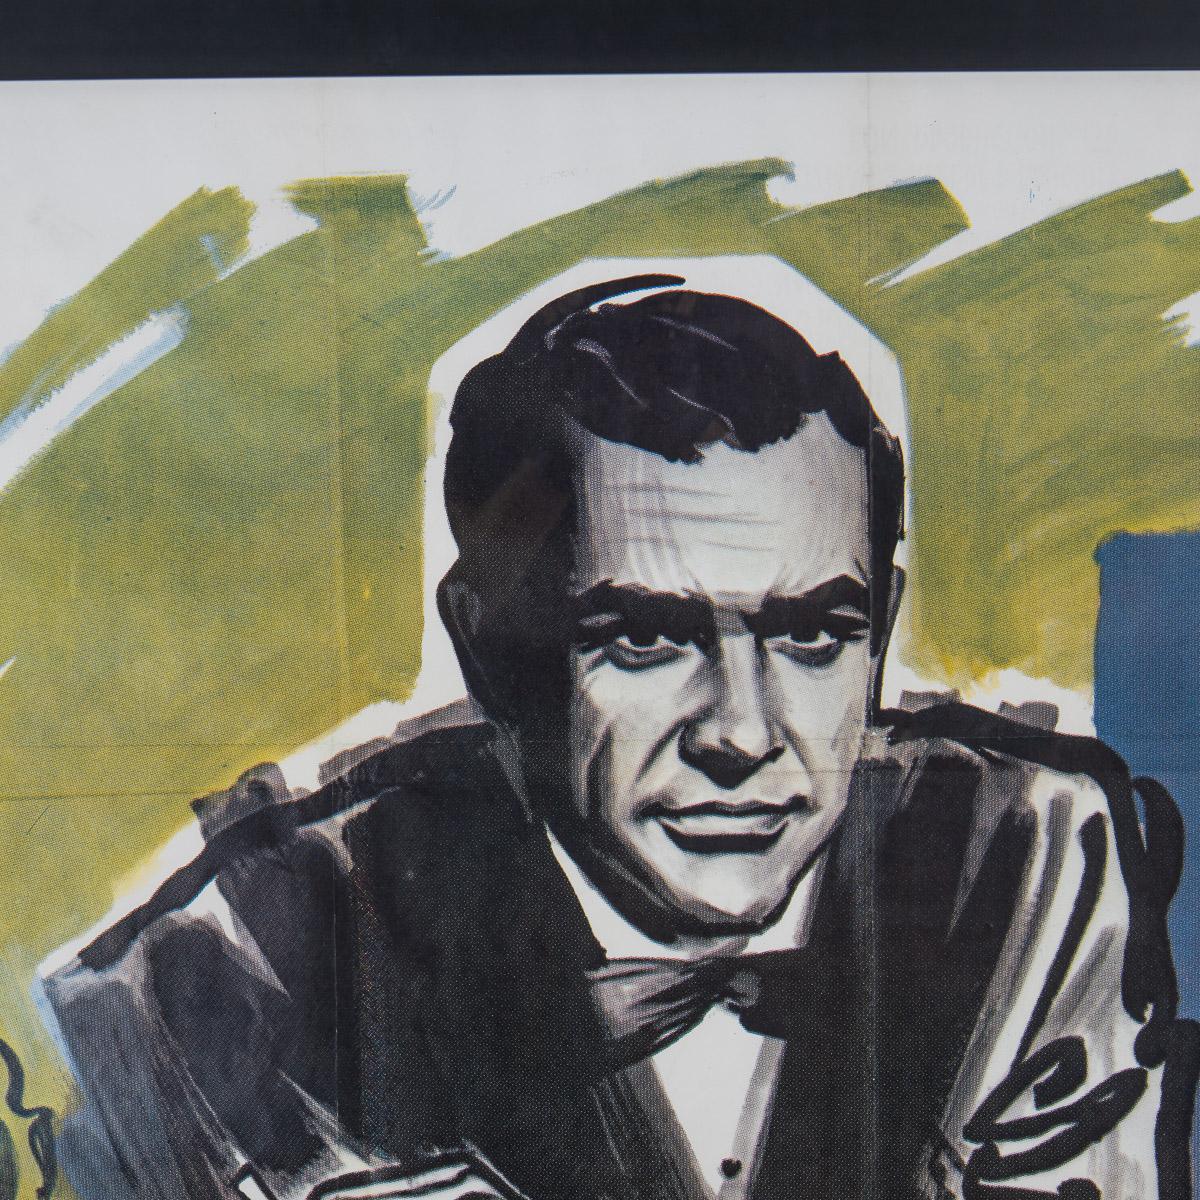 Ein sehr seltenes und original James Bond Dr. No (1962) Französisch Grande Filmplakat, Künstler: Boris Grinsson (1907-1999). Film mit Sean Connery in der Hauptrolle, dem ersten Film der Reihe. Dr. No ist ein Spionagefilm aus dem Jahr 1962 unter der